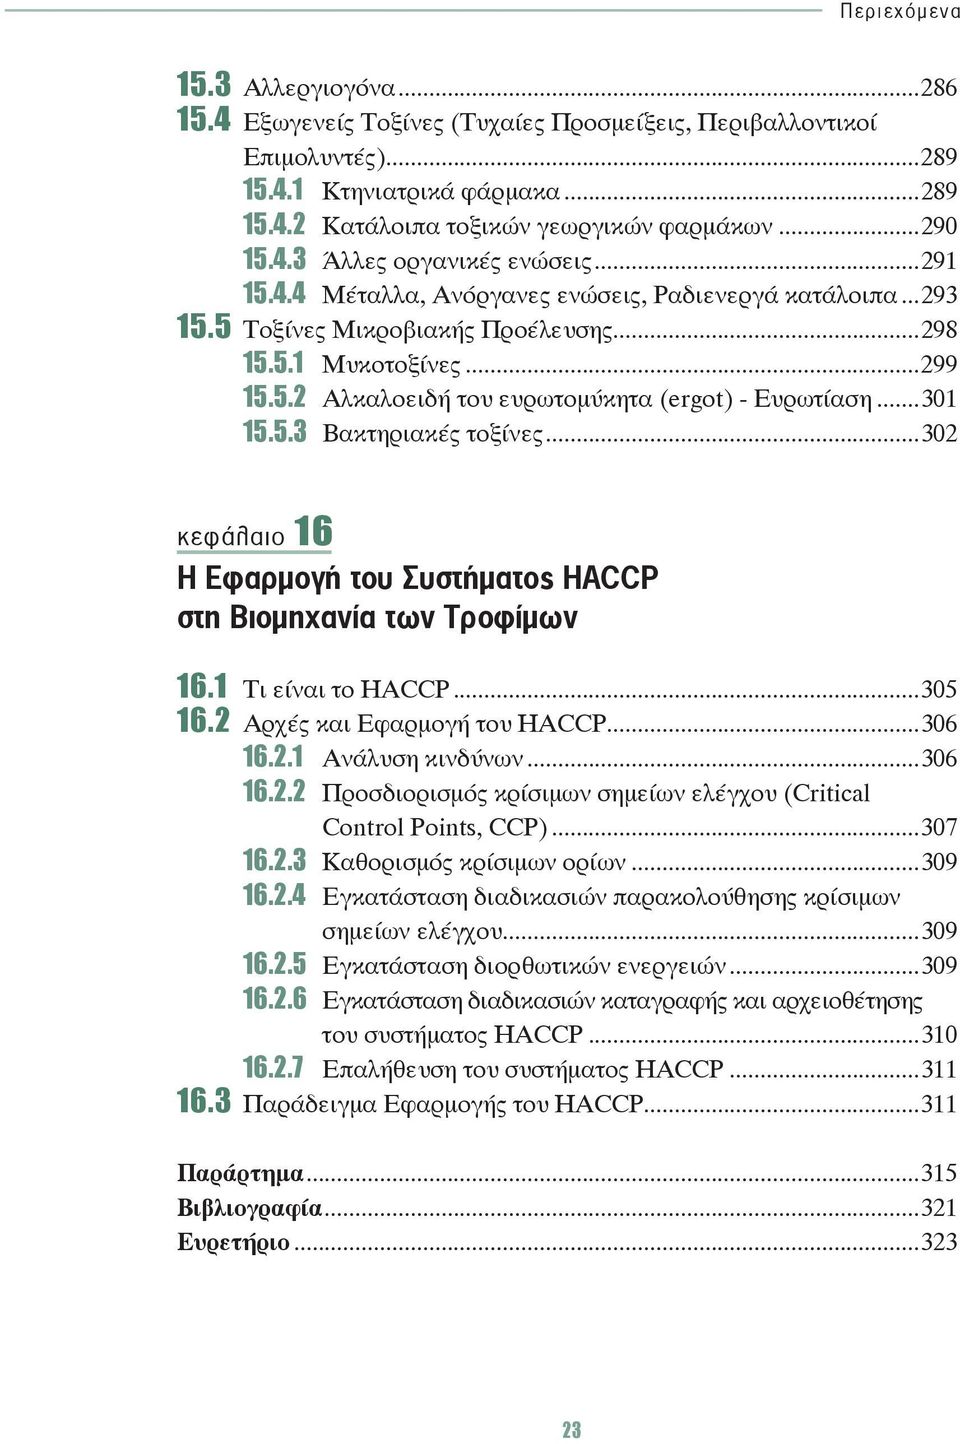 5.3 Βακτηριακές τοξίνες...302 κεφάλαιο 16 Η Εφαρμογή του Συστήματος HACCP στη Βιομηχανία των Τροφίμων 16.1 Τι είναι το HACCP...305 16.2 Αρχές και Εφαρμογή του HACCP...306 16.2.1 Ανάλυση κινδύνων.